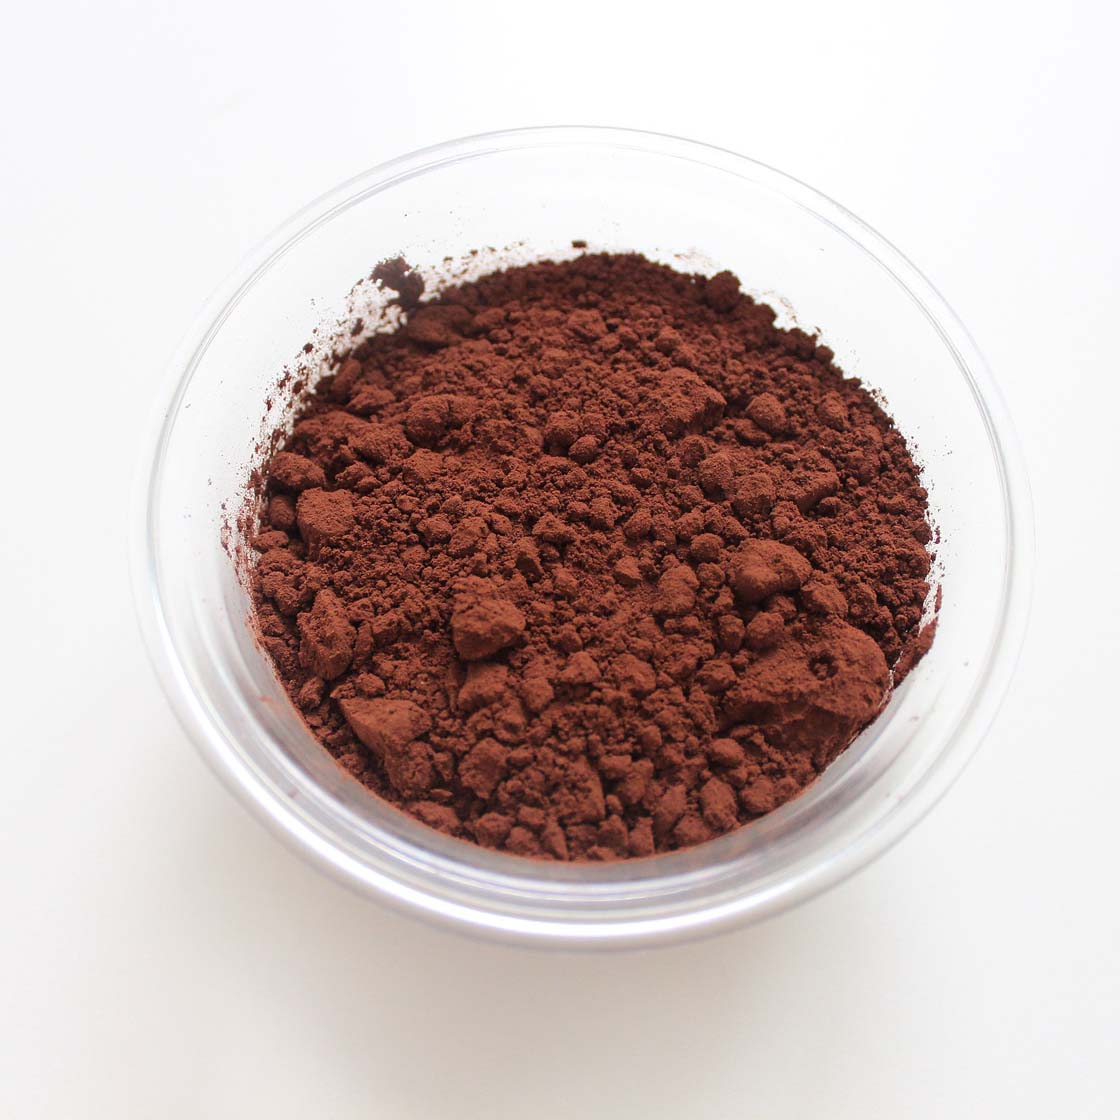 Cocoa Powder (Organic)